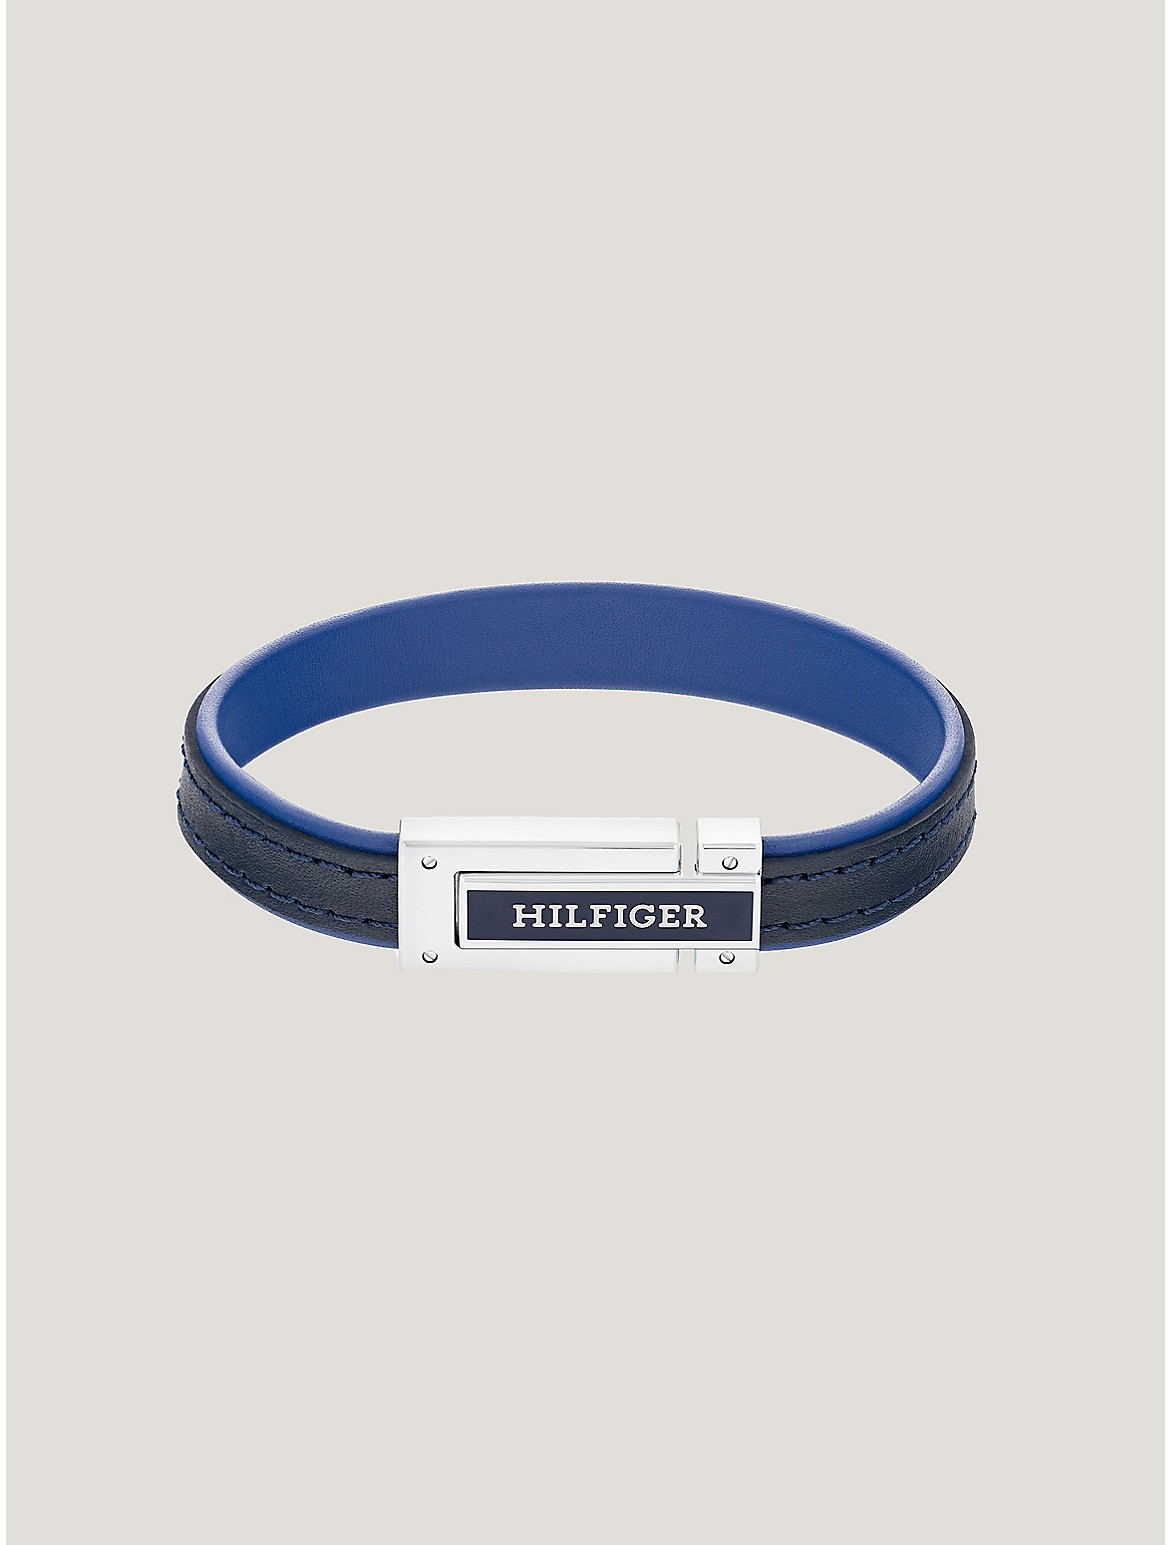 Tommy Hilfiger Men's Hilfiger Blue Leather Bracelet